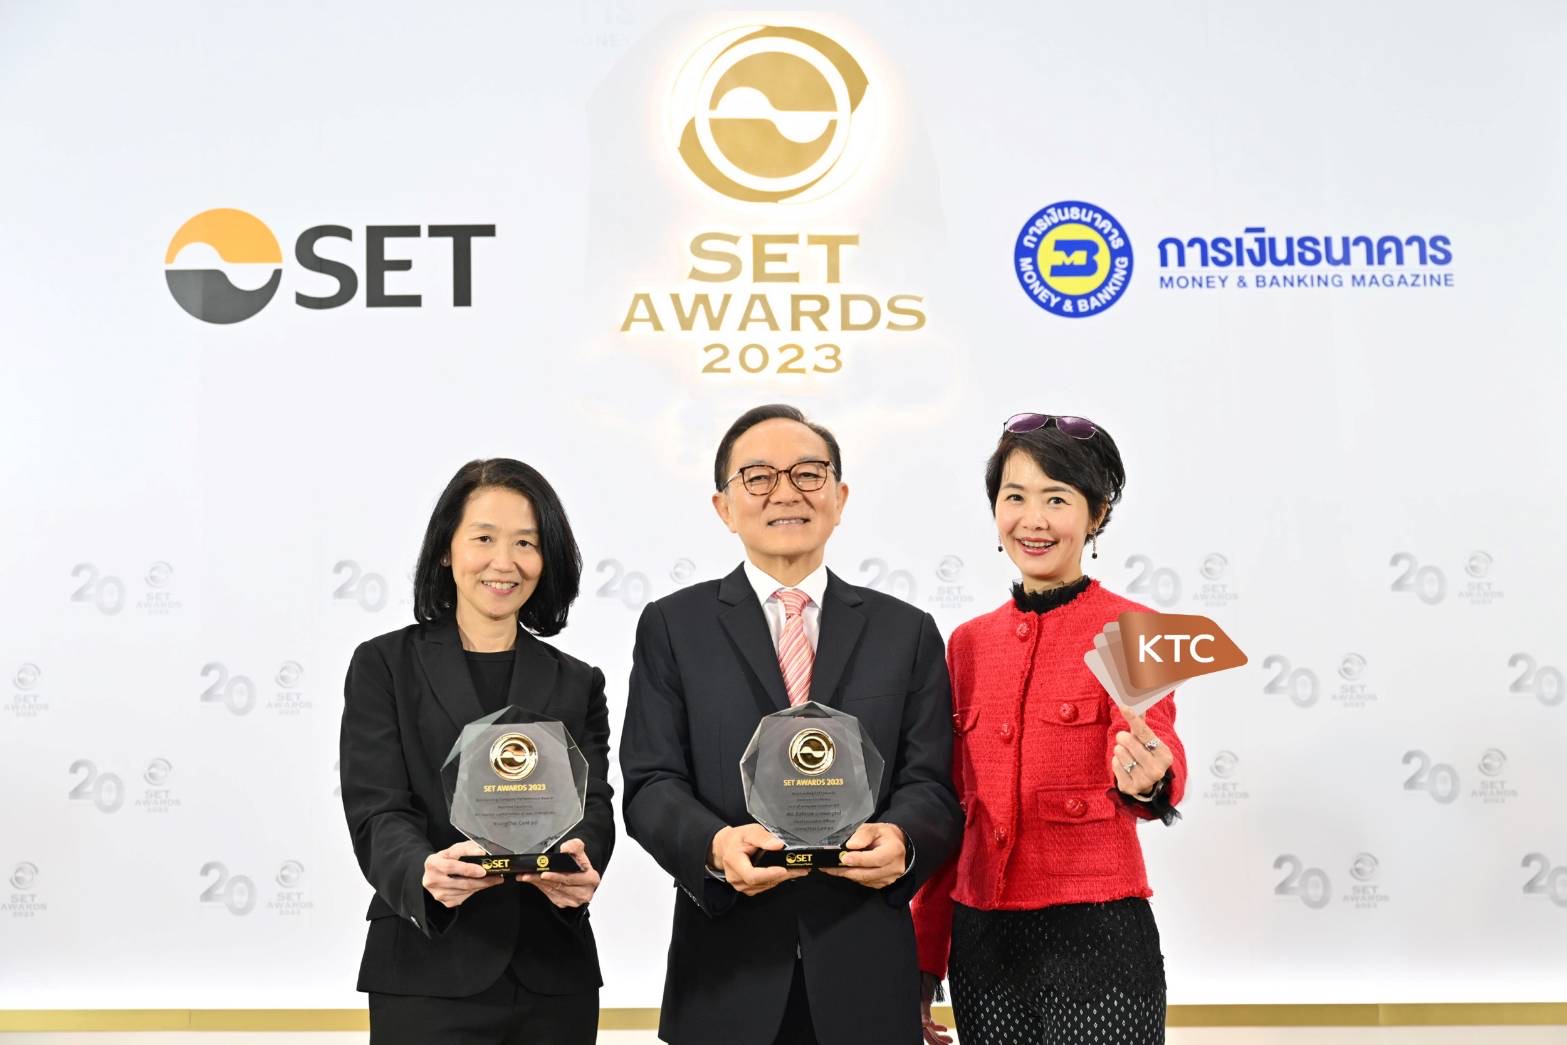 เคทีซีรับรางวัลบริษัทที่มีผลการดำเนินงานดีเด่น ในงาน SET Awards 2023